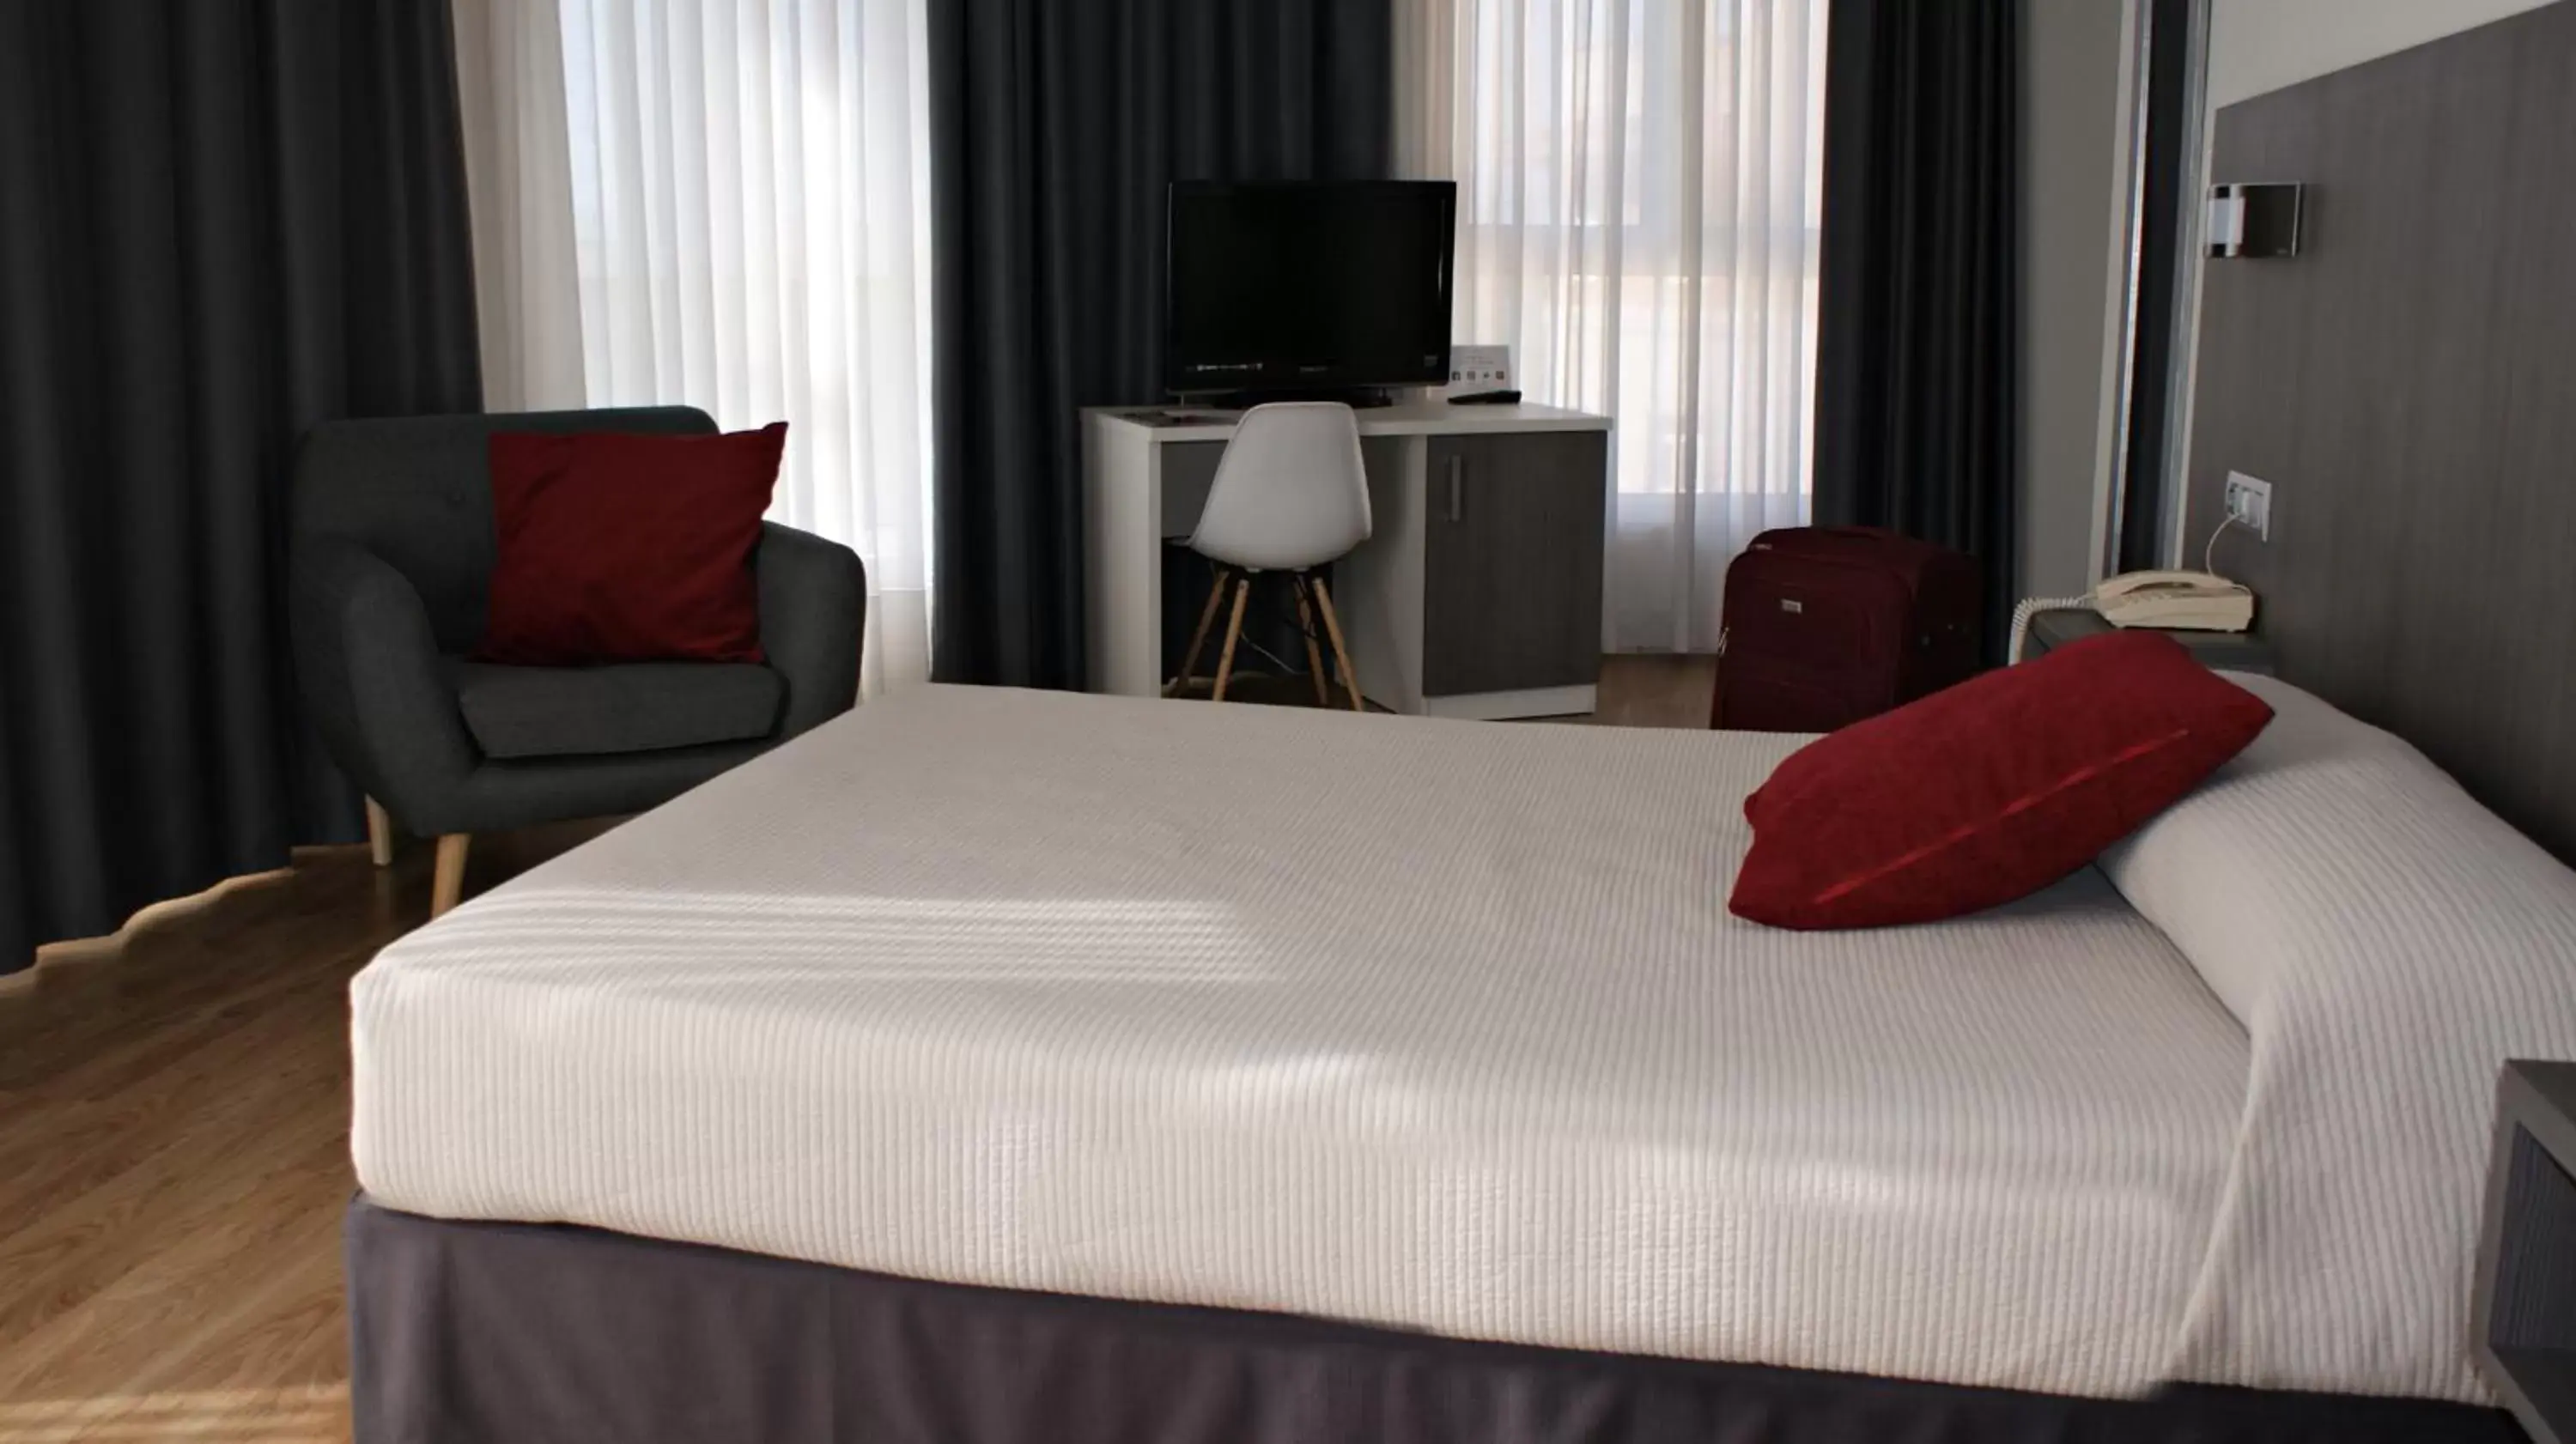 Bed in Hotel Seminario Aeropuerto Bilbao